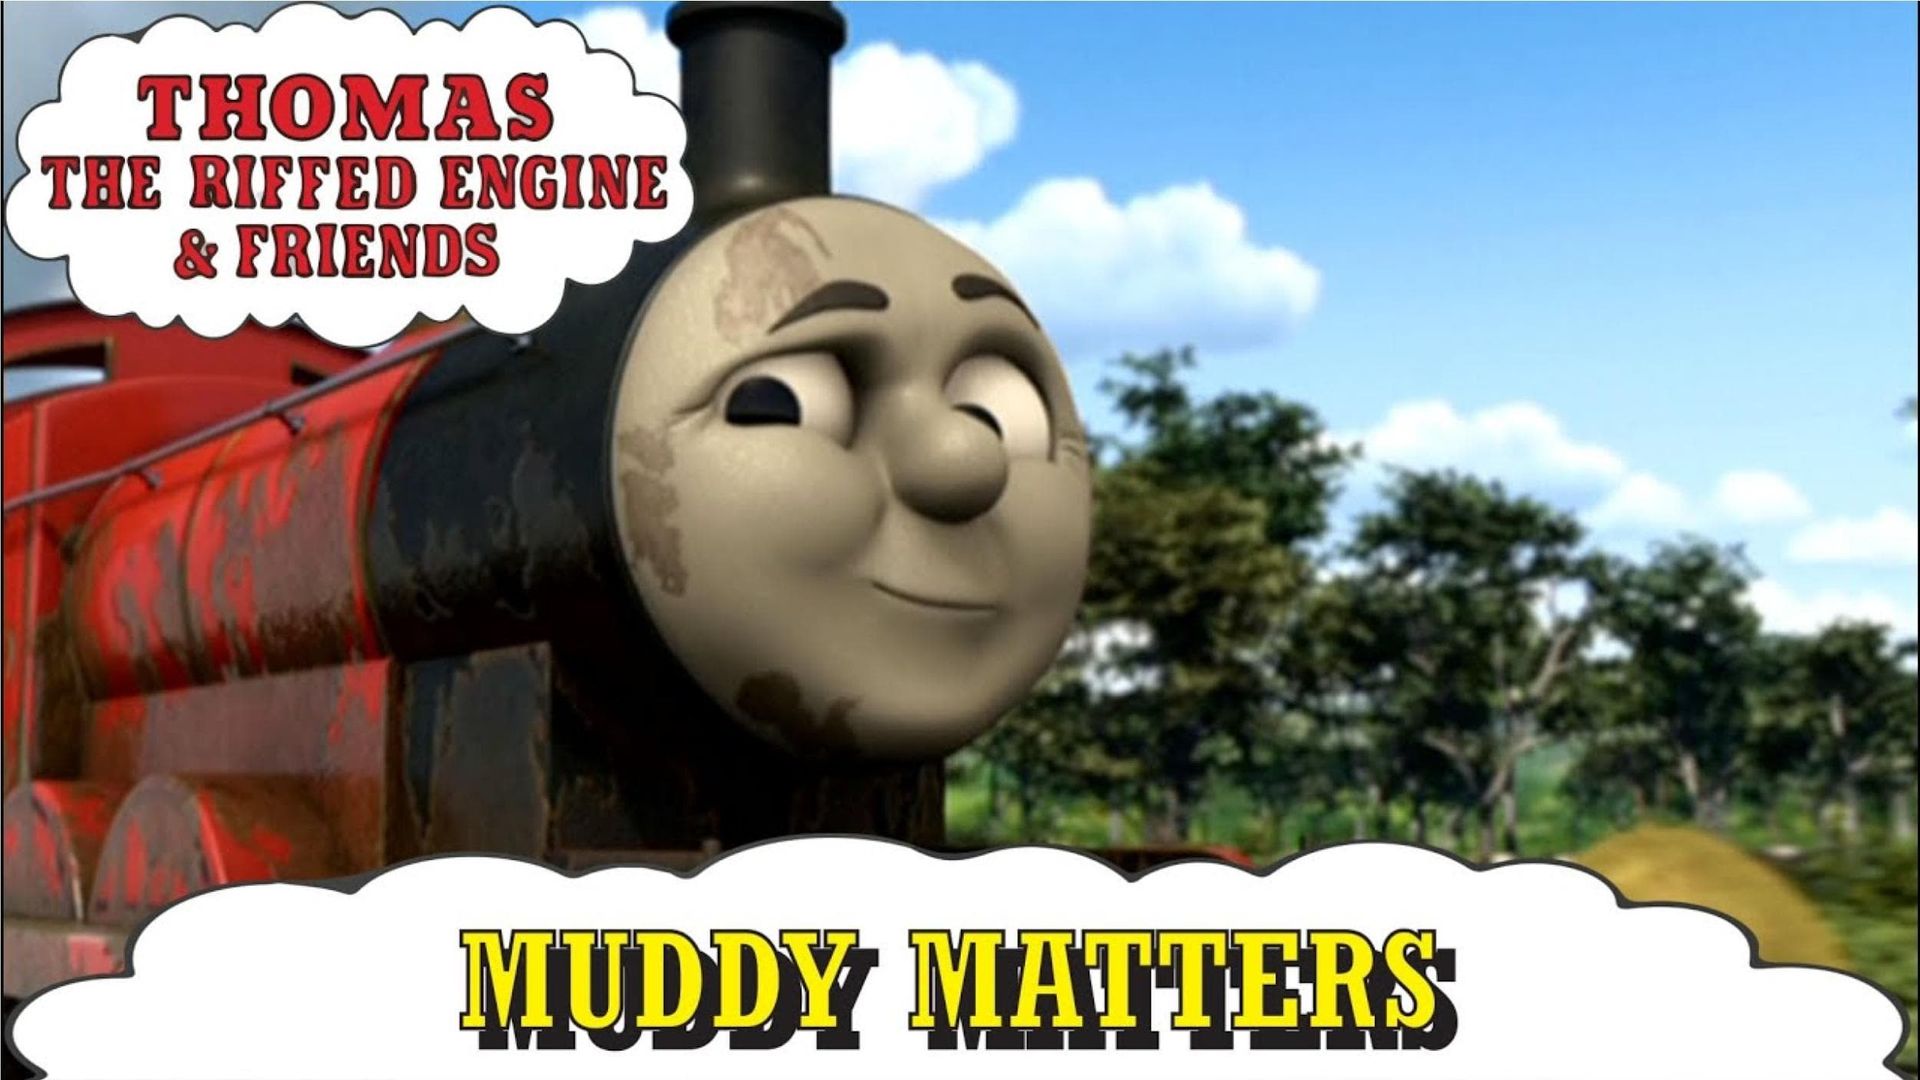 Thomas & Friends: Muddy Matters background